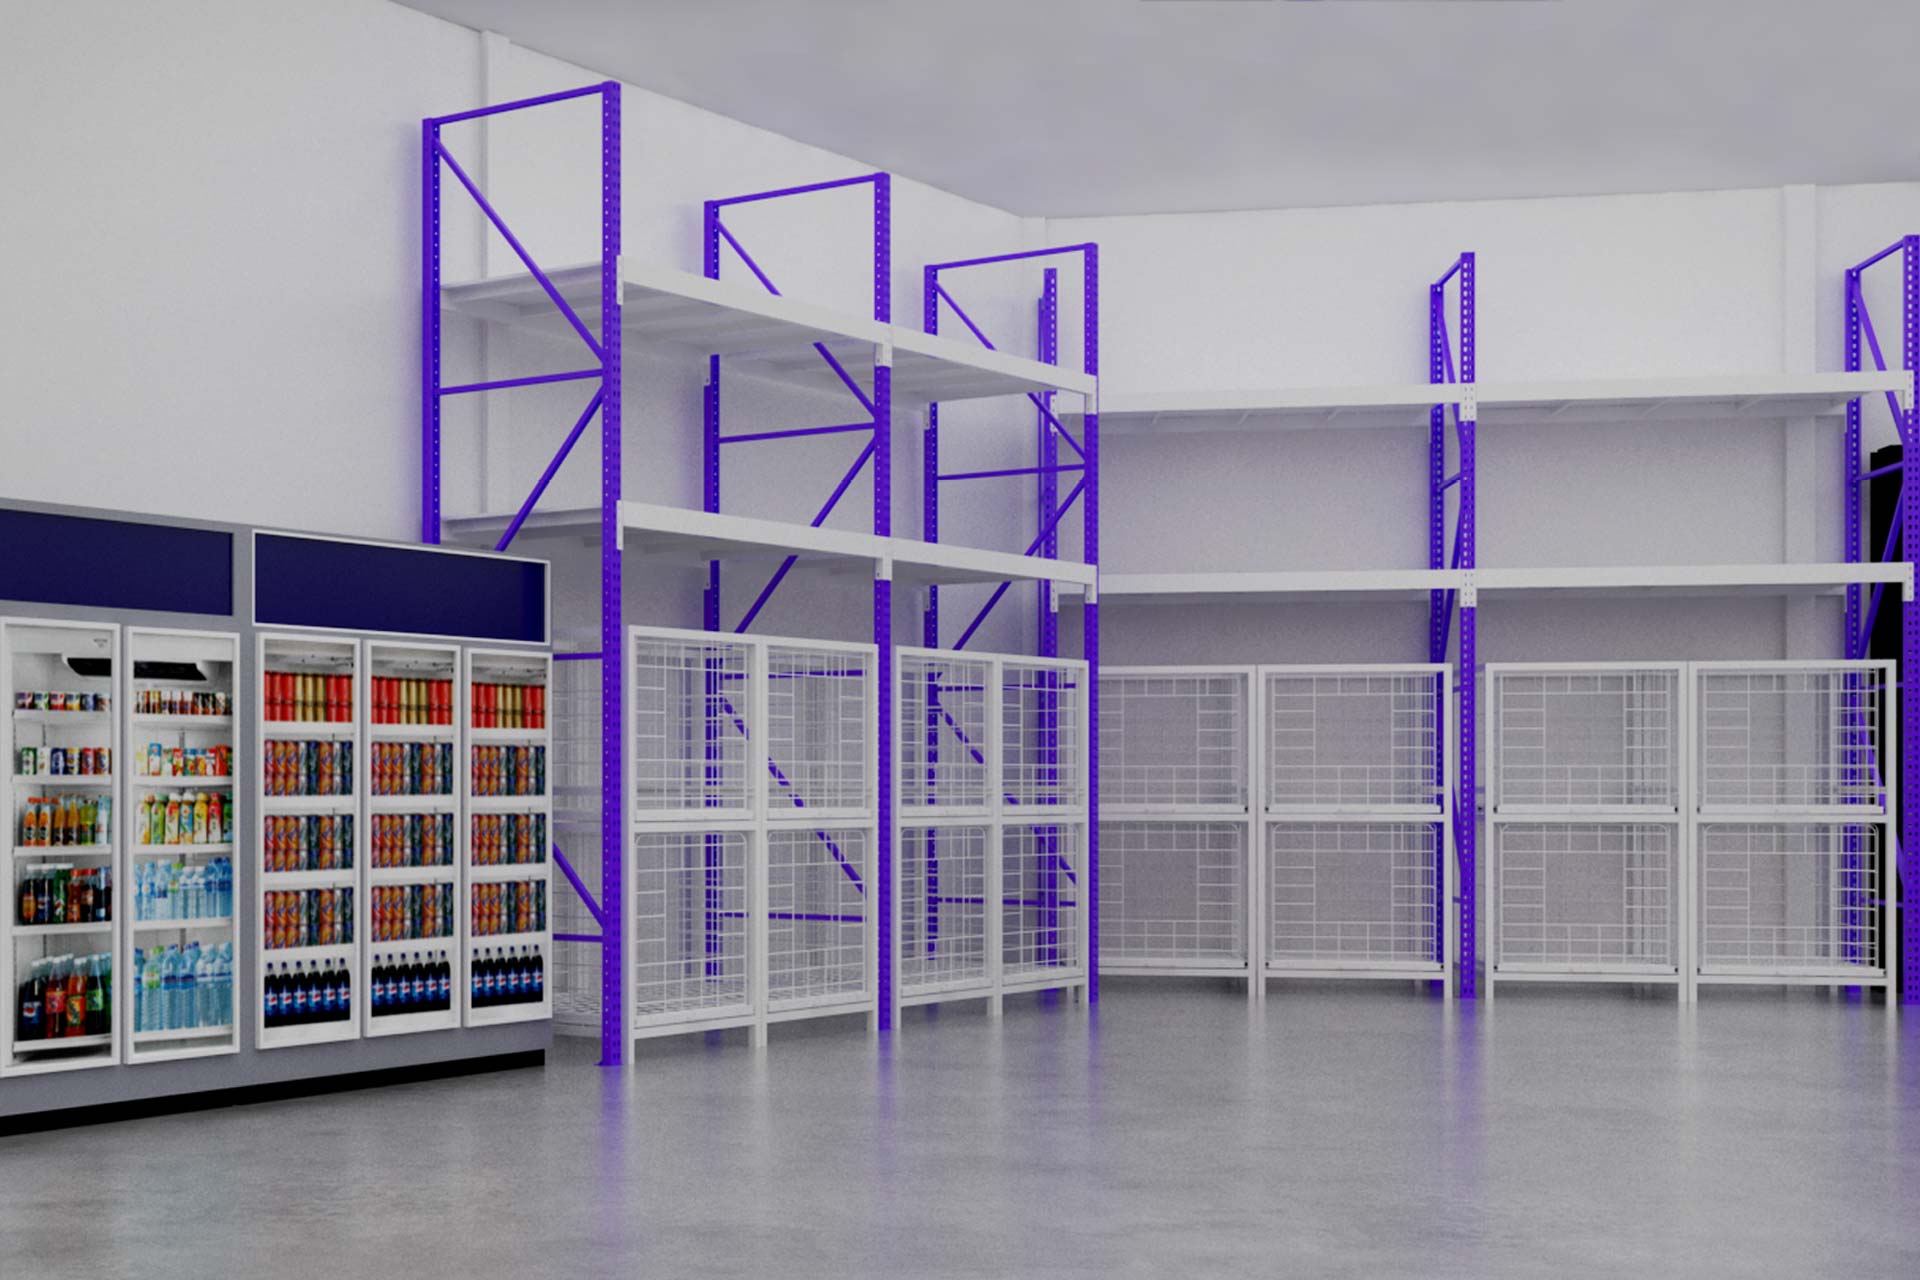 ออกแบบร้านค้าปลีก 3D ร้านทีแอนด์เอ็น เทรดดิ้ง